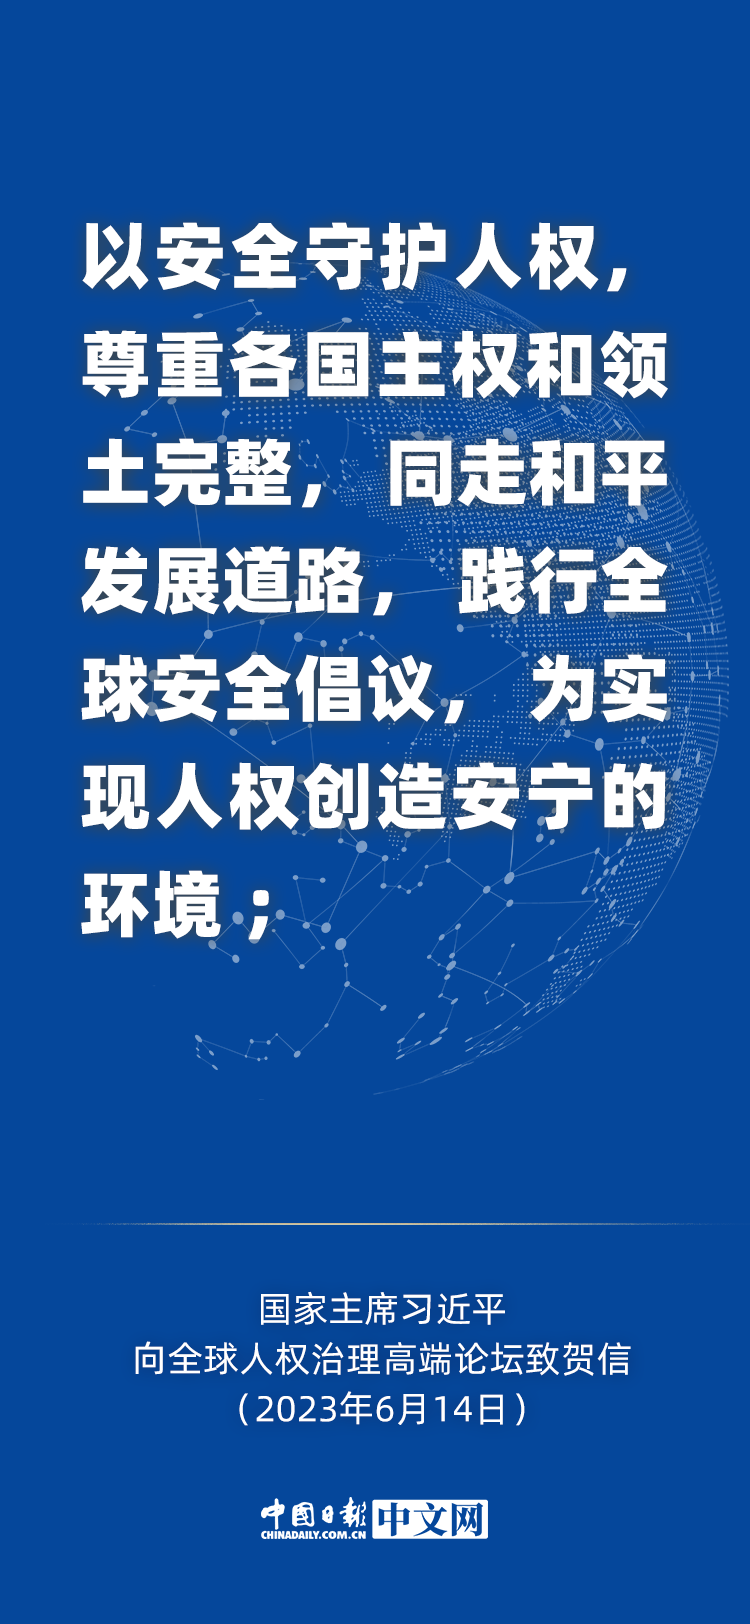 海報 | 習近平為全球人權治理提出中國主張